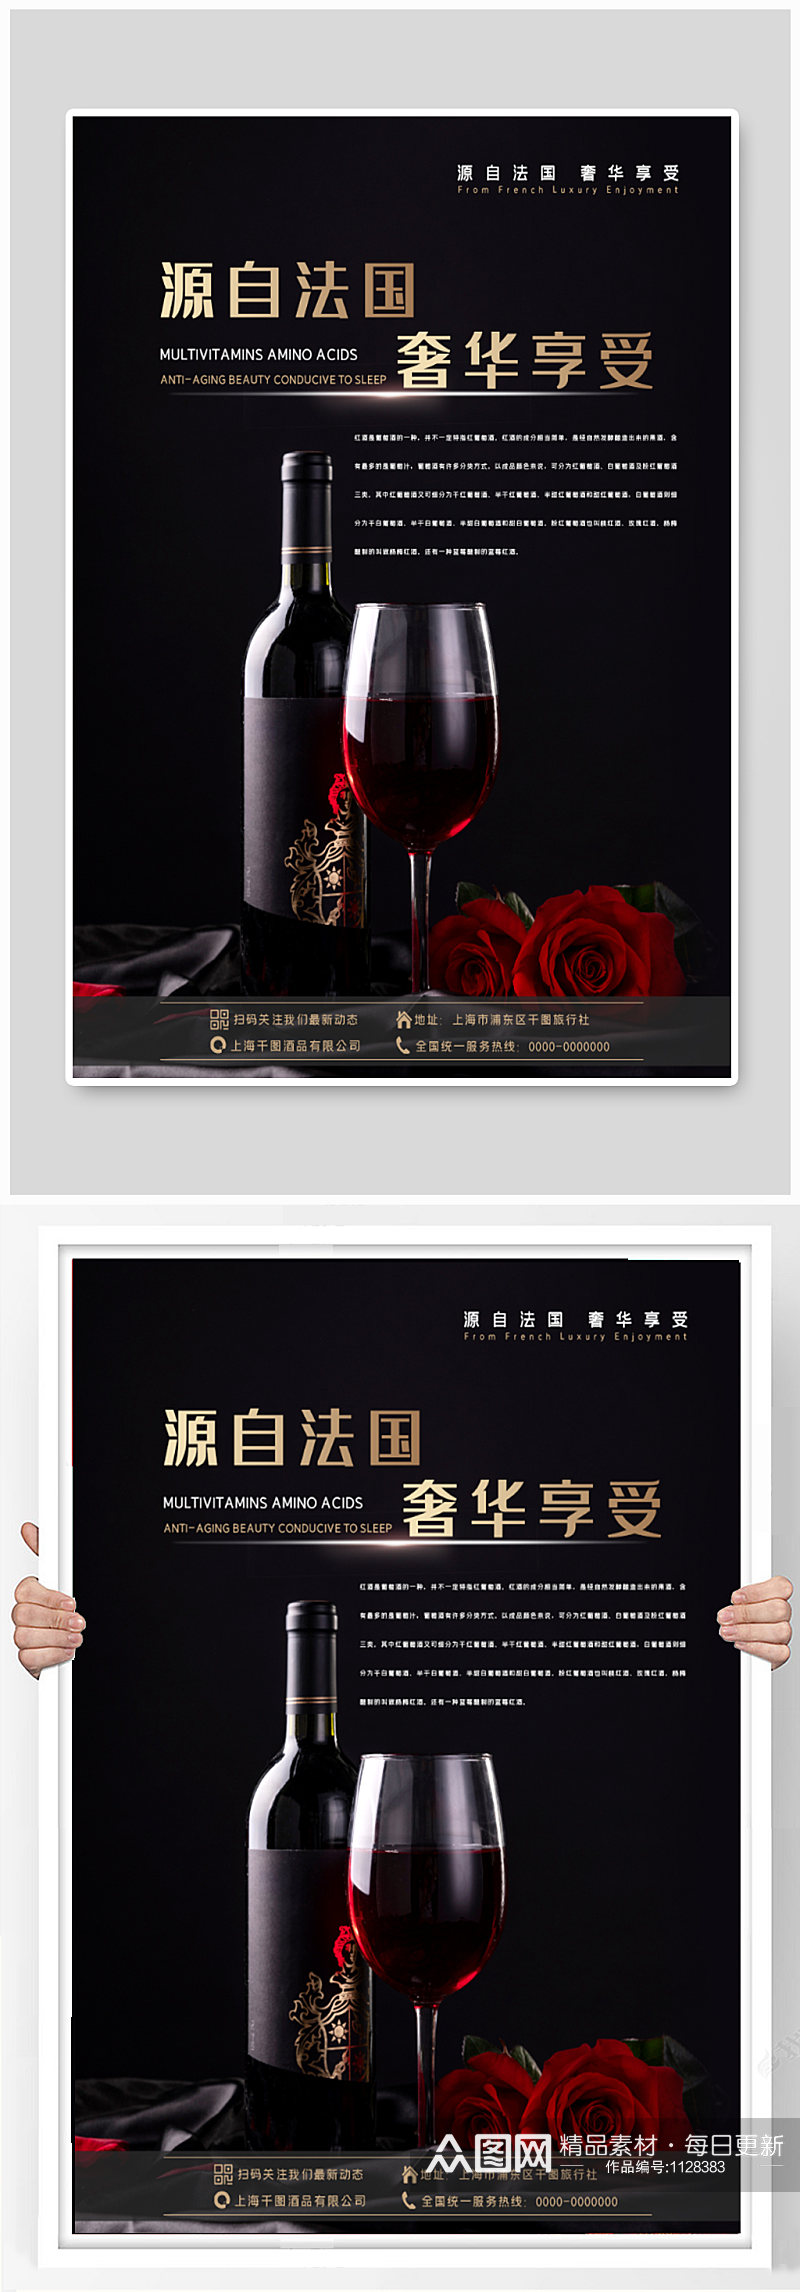 红酒行业产品宣传海报素材